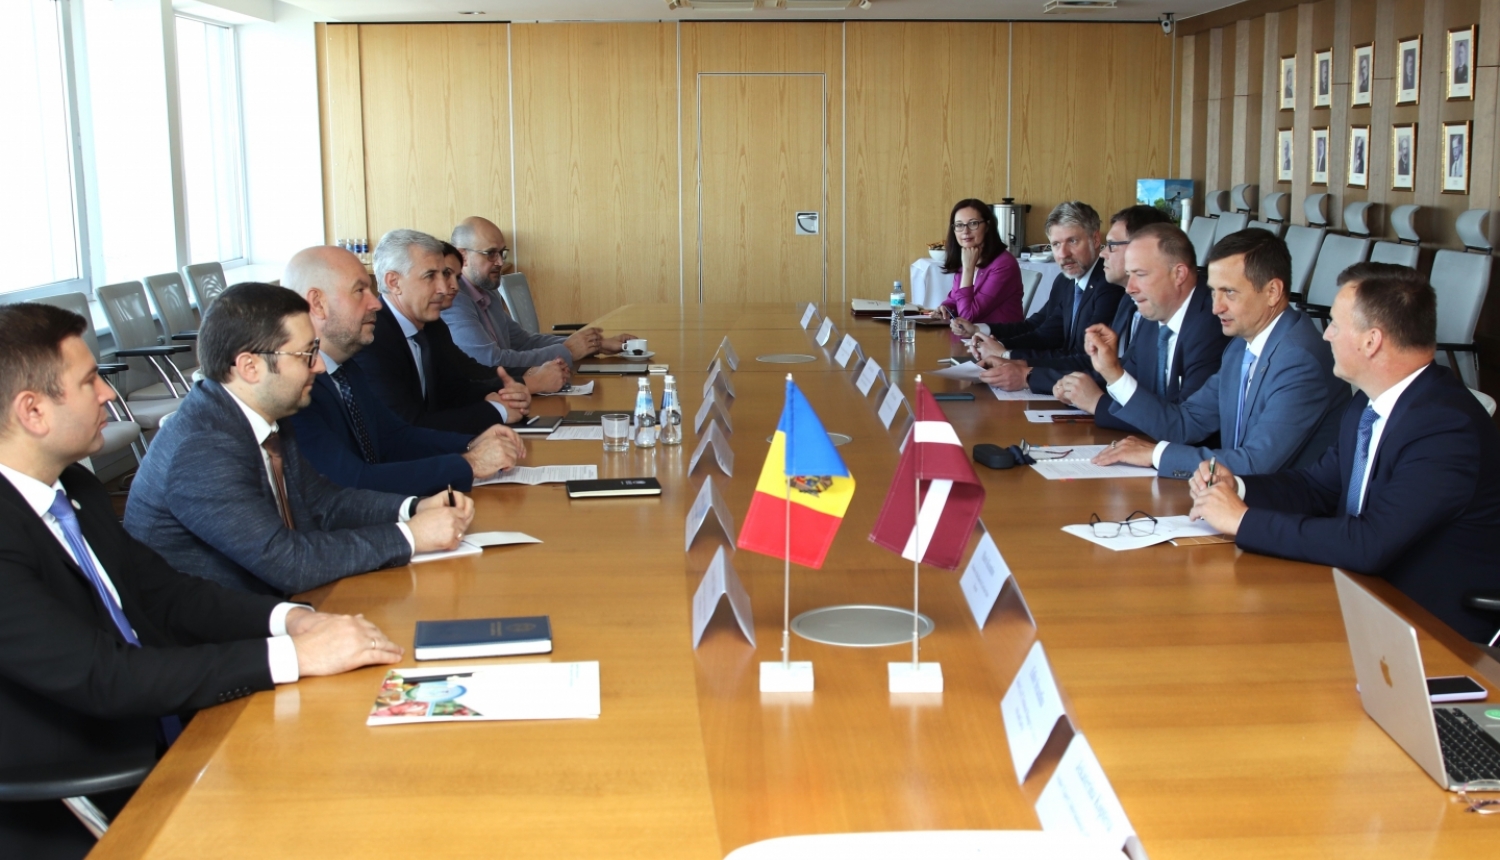 Zemkopības ministrijas delegācija ar Moldovas delegāciju pie galda